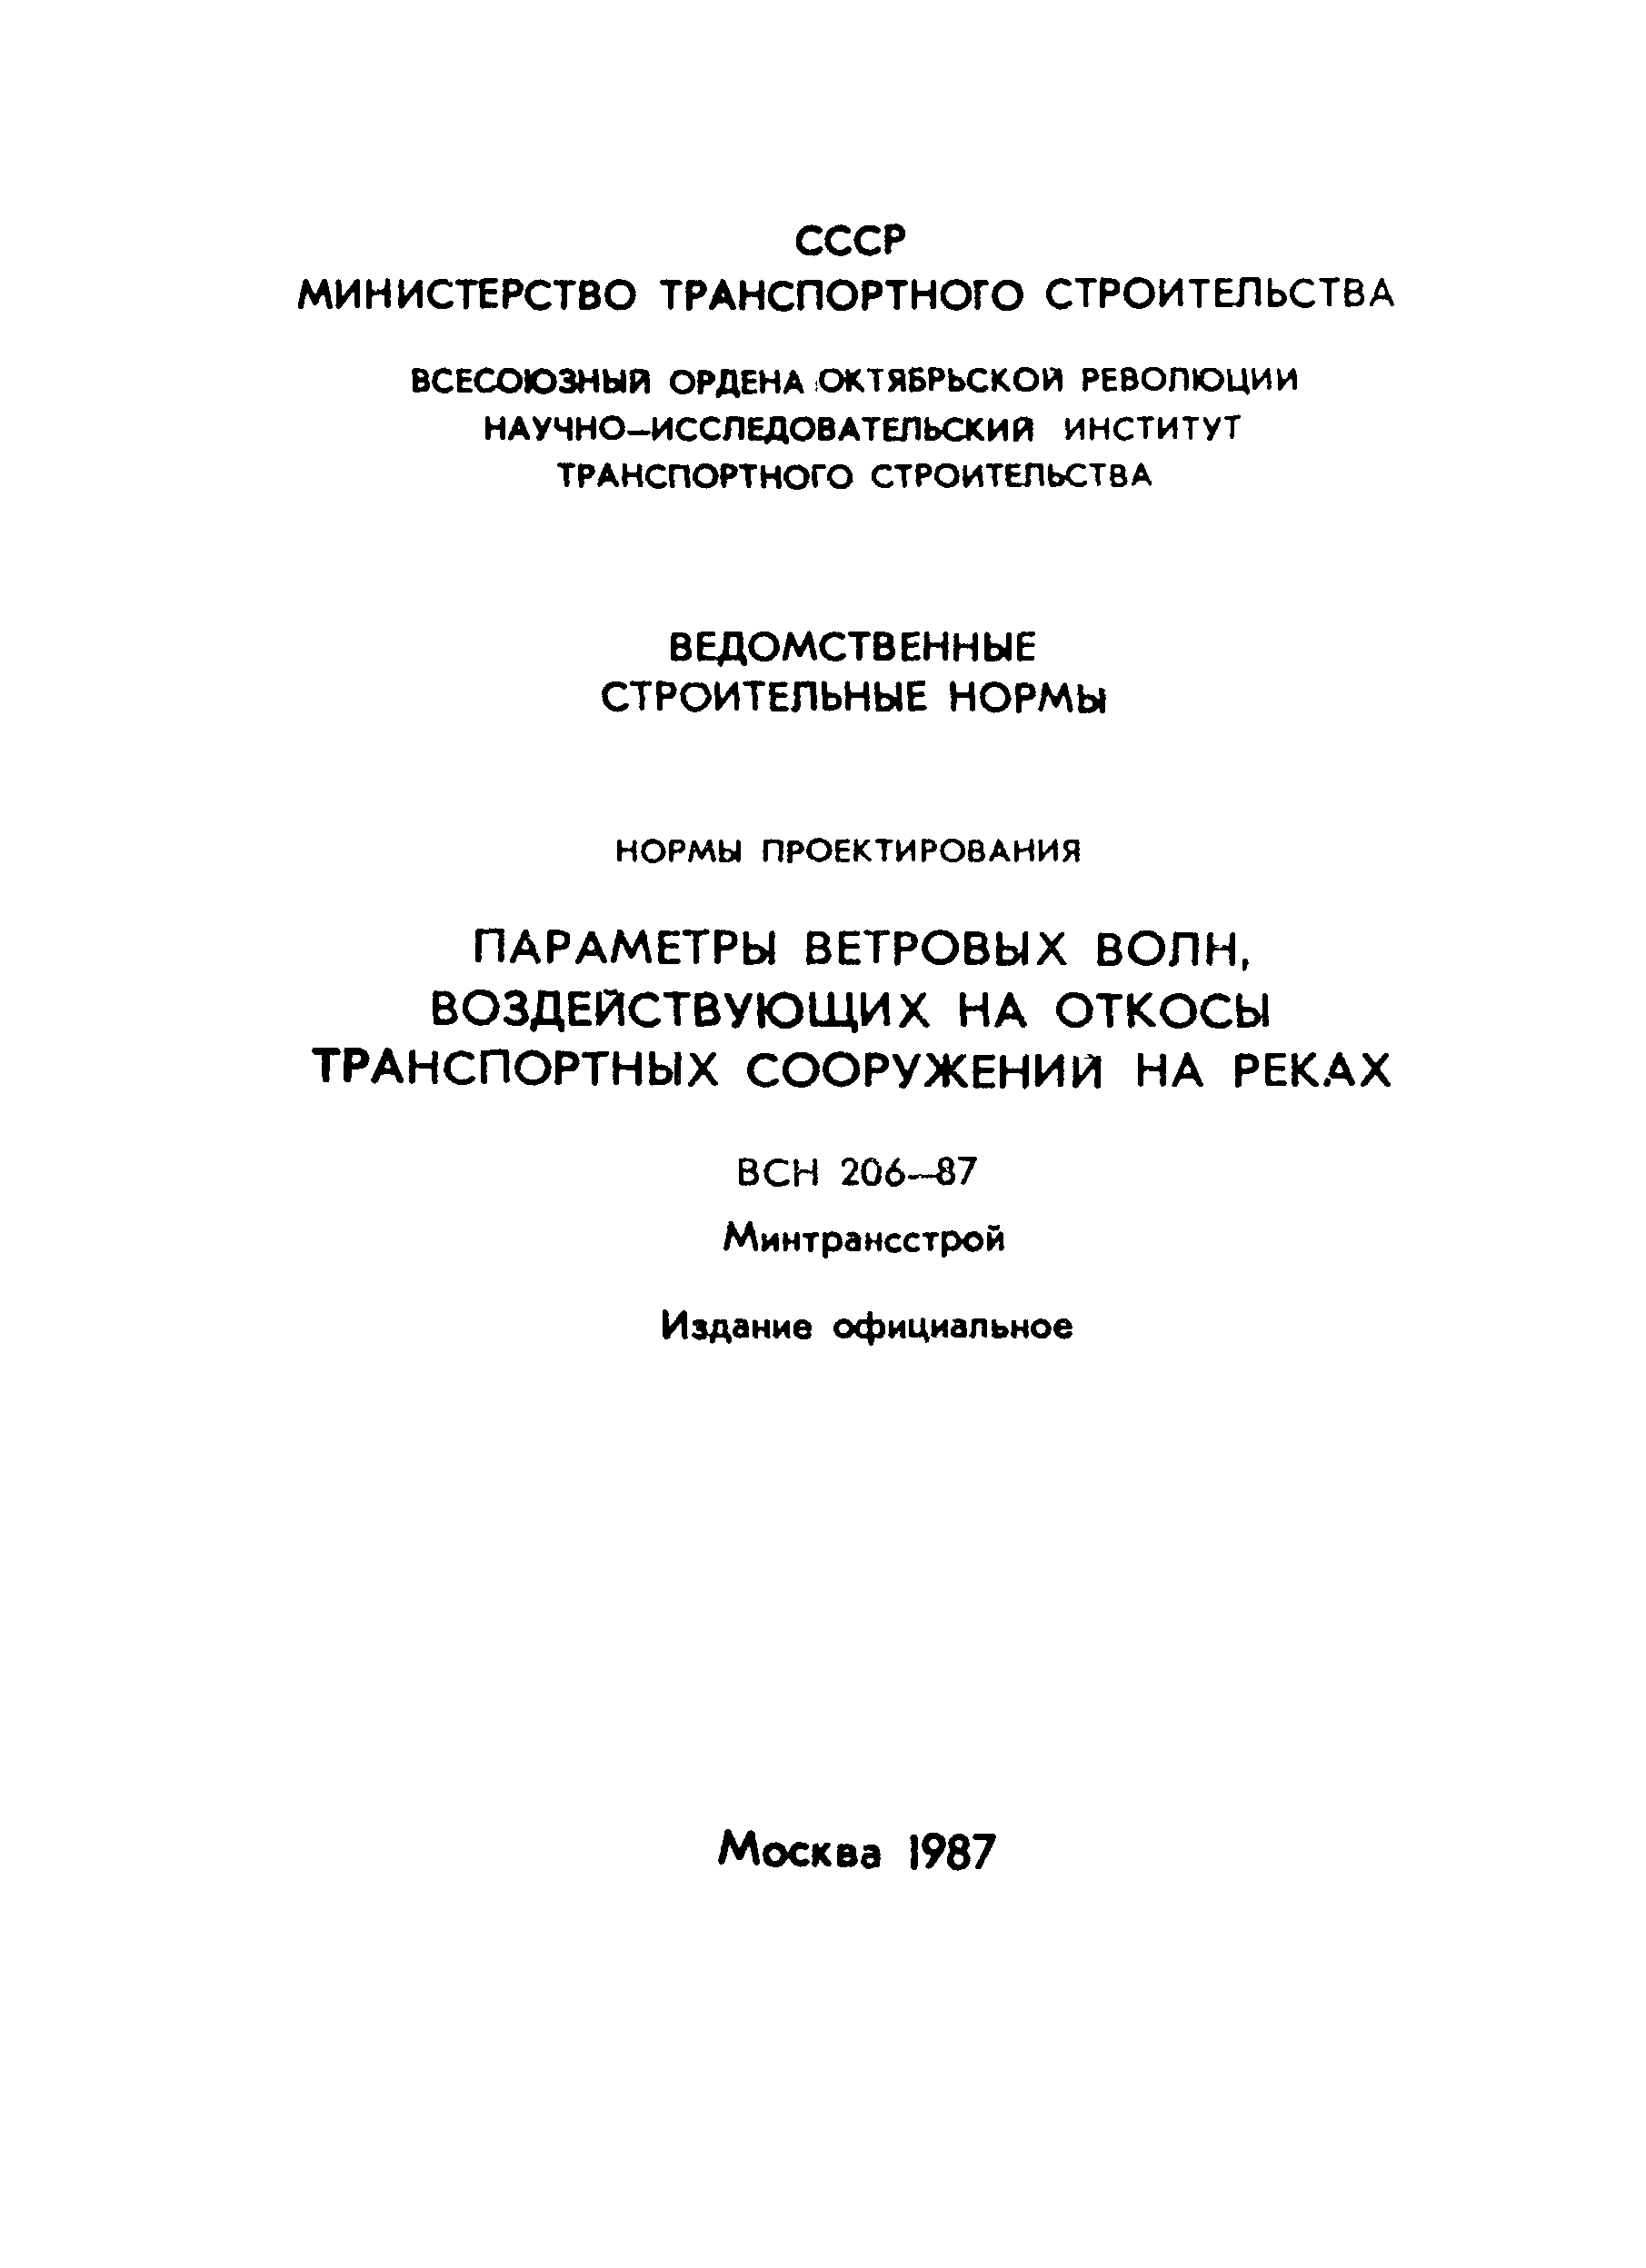 ВСН 206-87